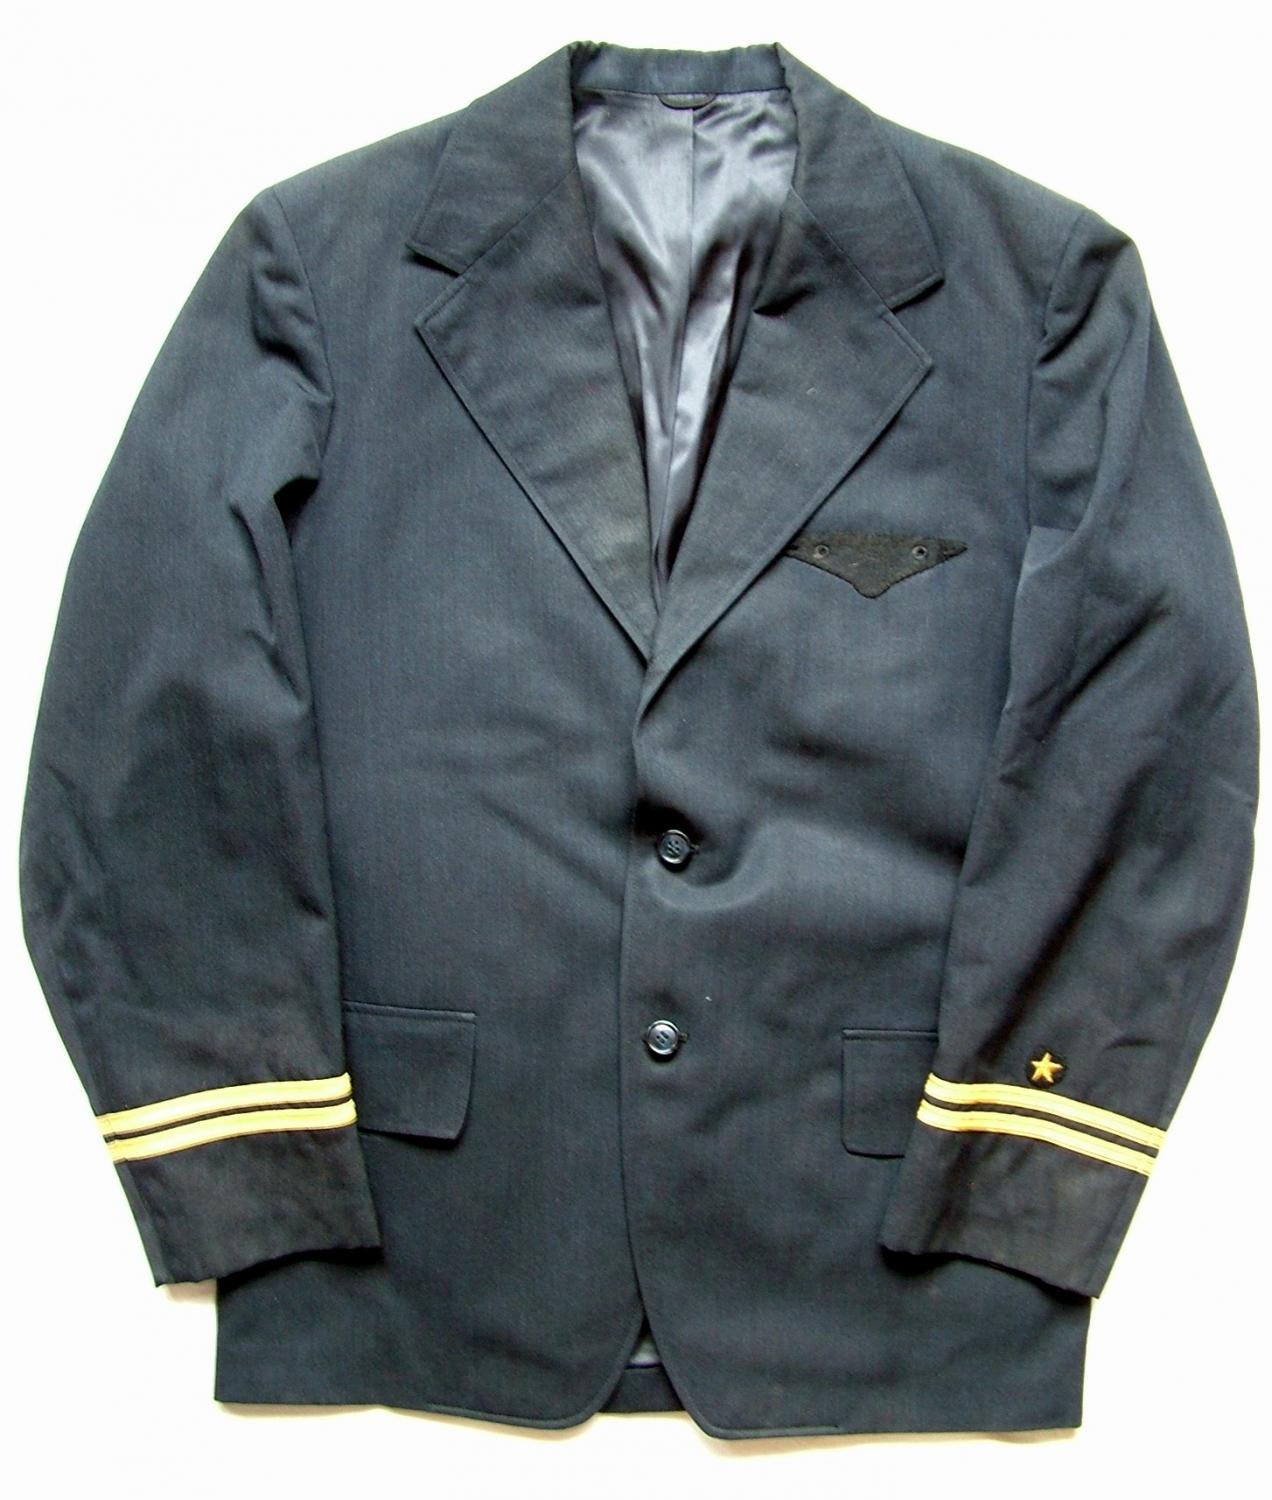 US Airline Aircrew Uniform - 1970s